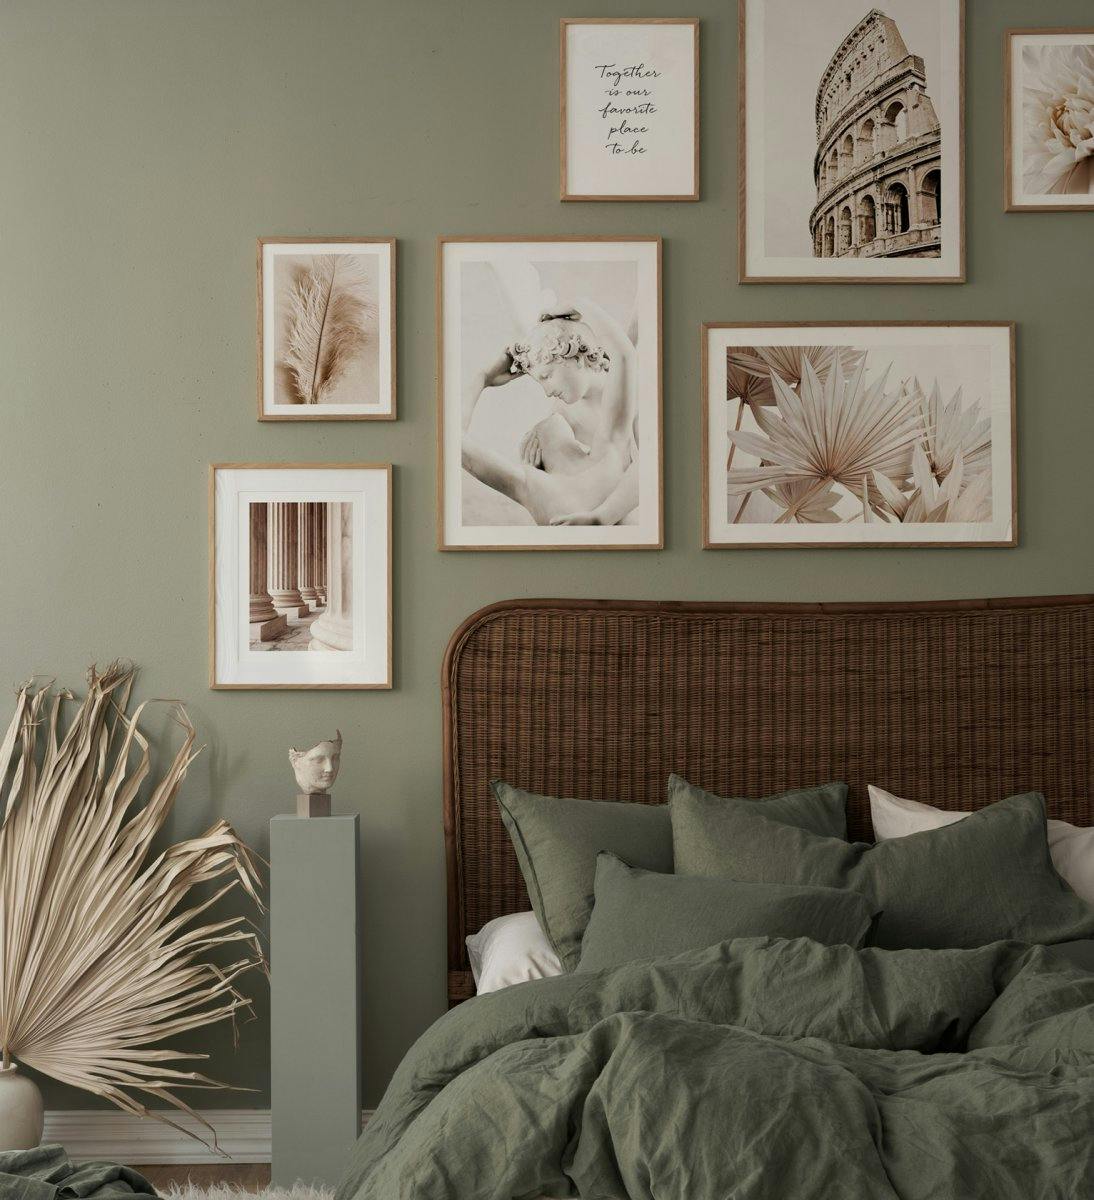 차분한 색상의 식물 및 플라워 프린트가 아름답게 어우러진 침실을 위한 갤러리월